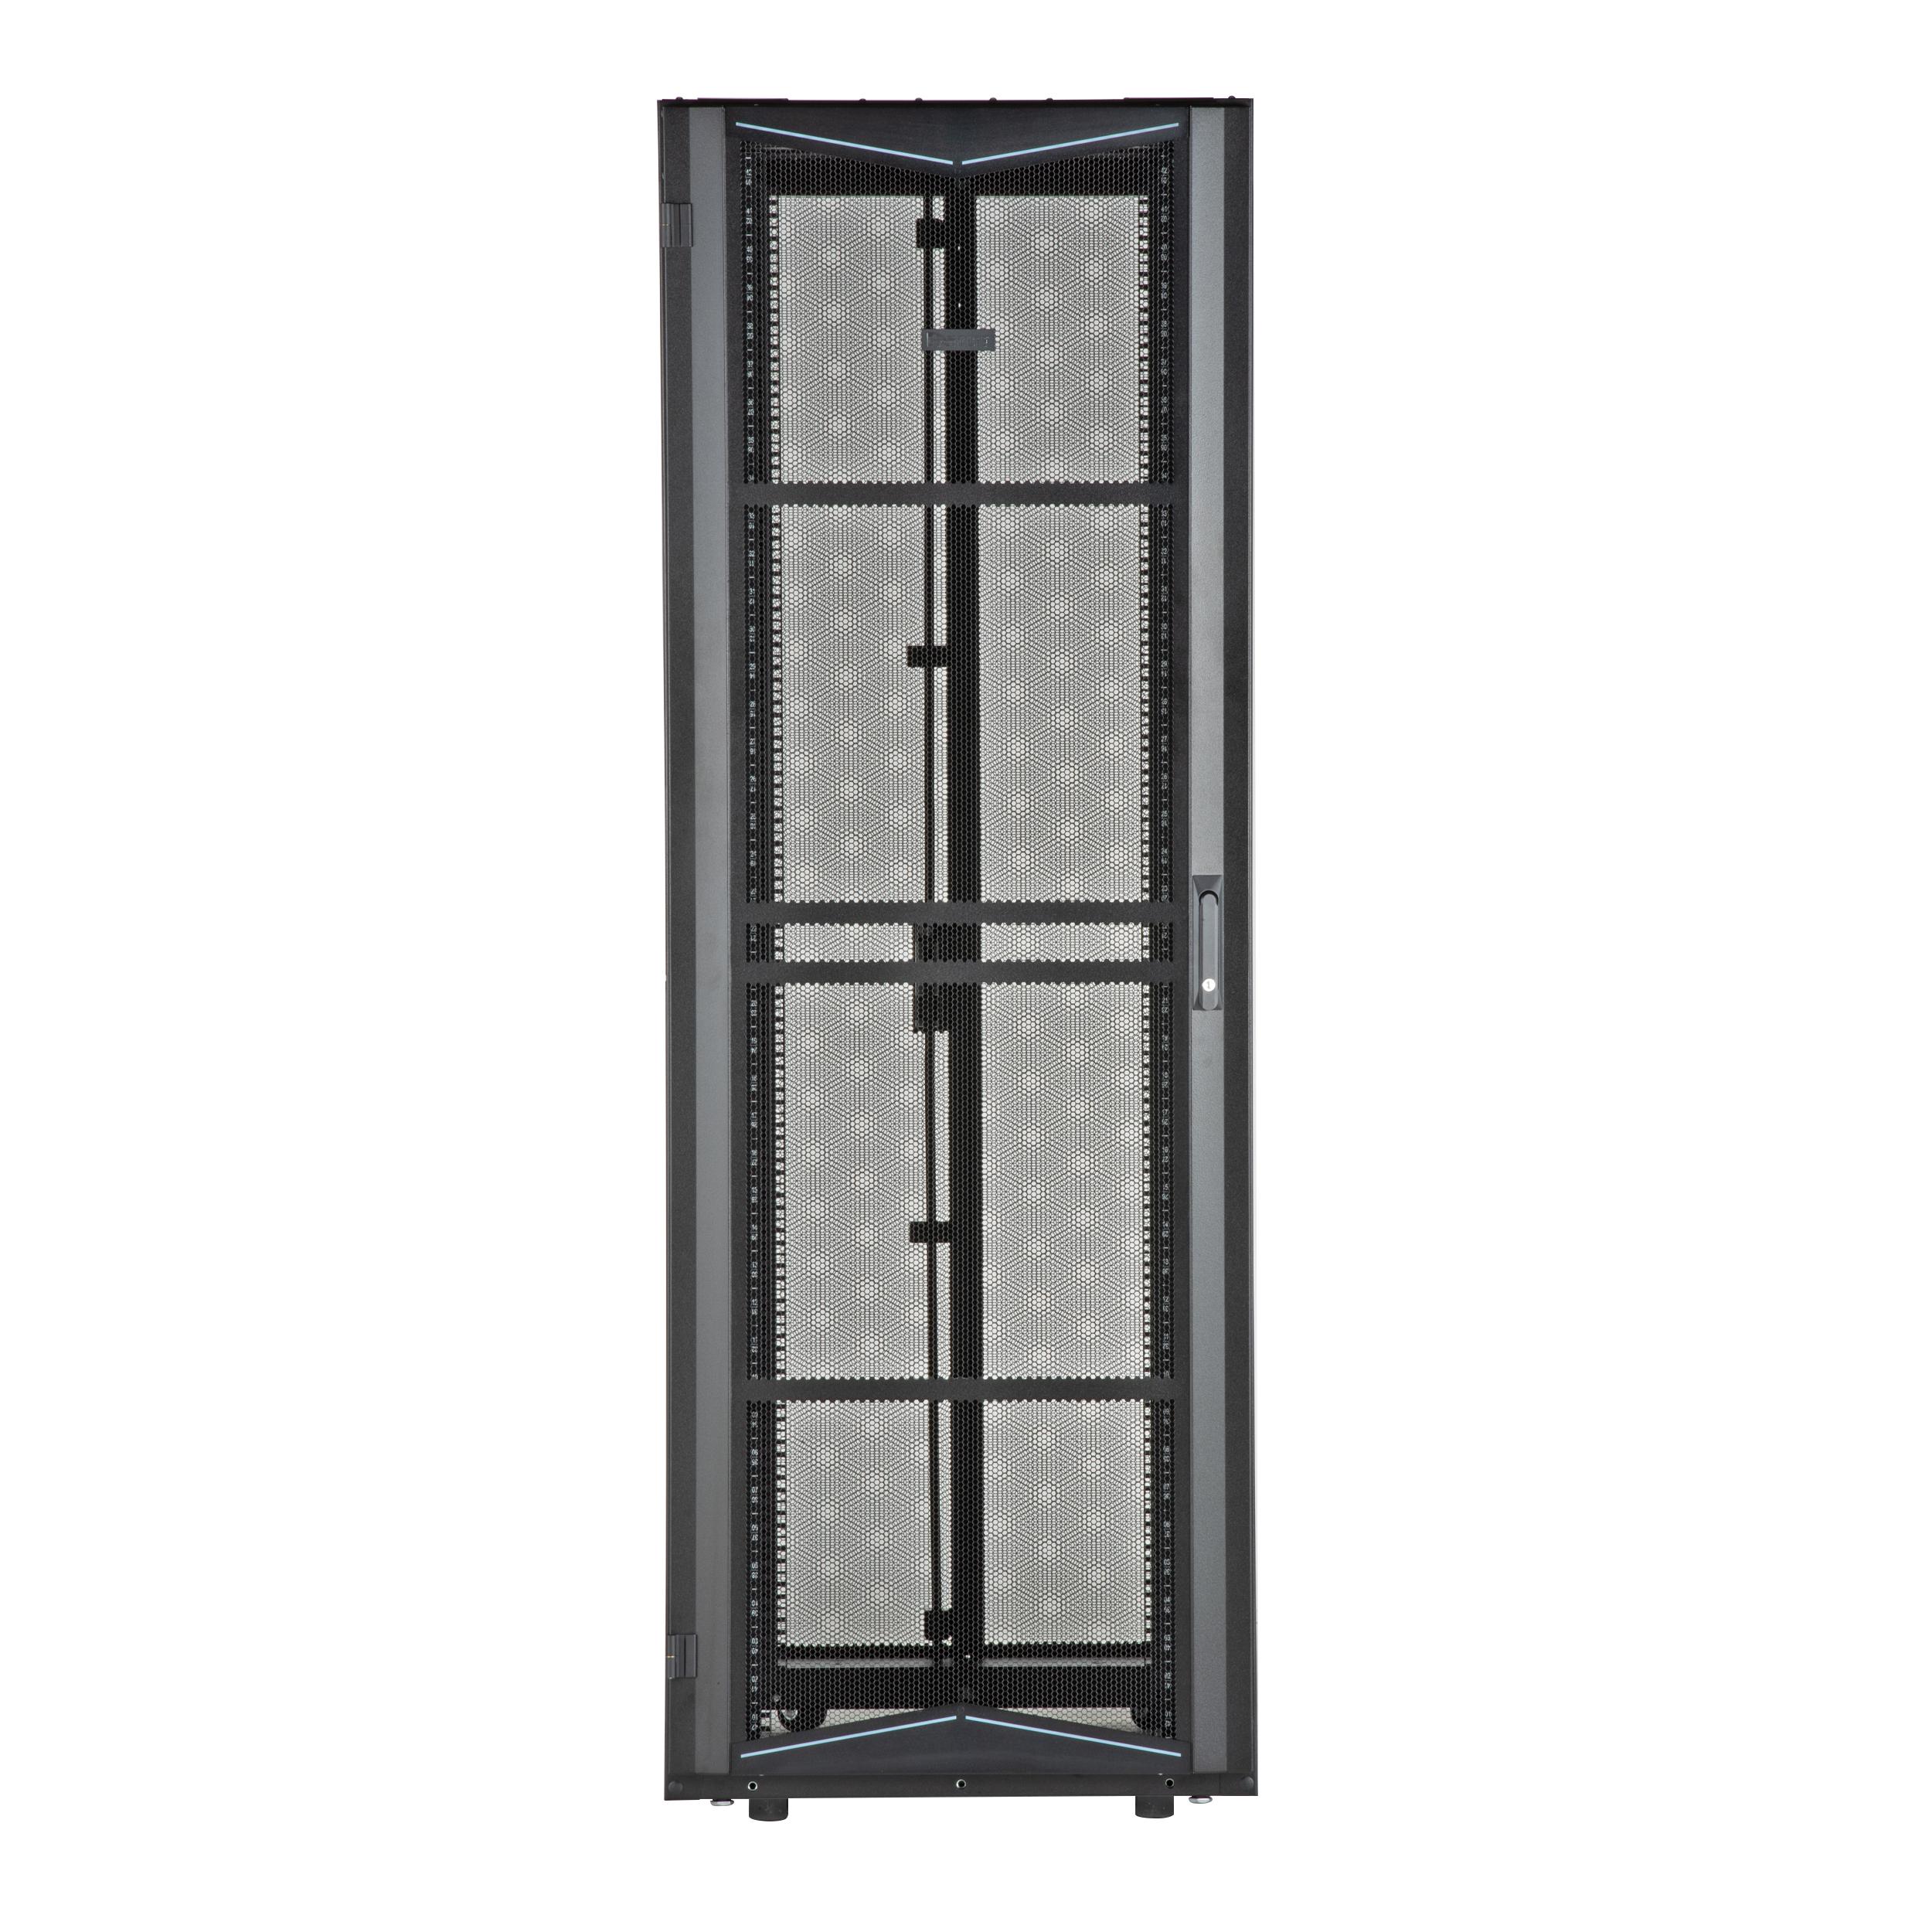 Panduit XG74522BS0004 FlexFusion Cabinet, 700mm x 45RU x 1200mm, Black